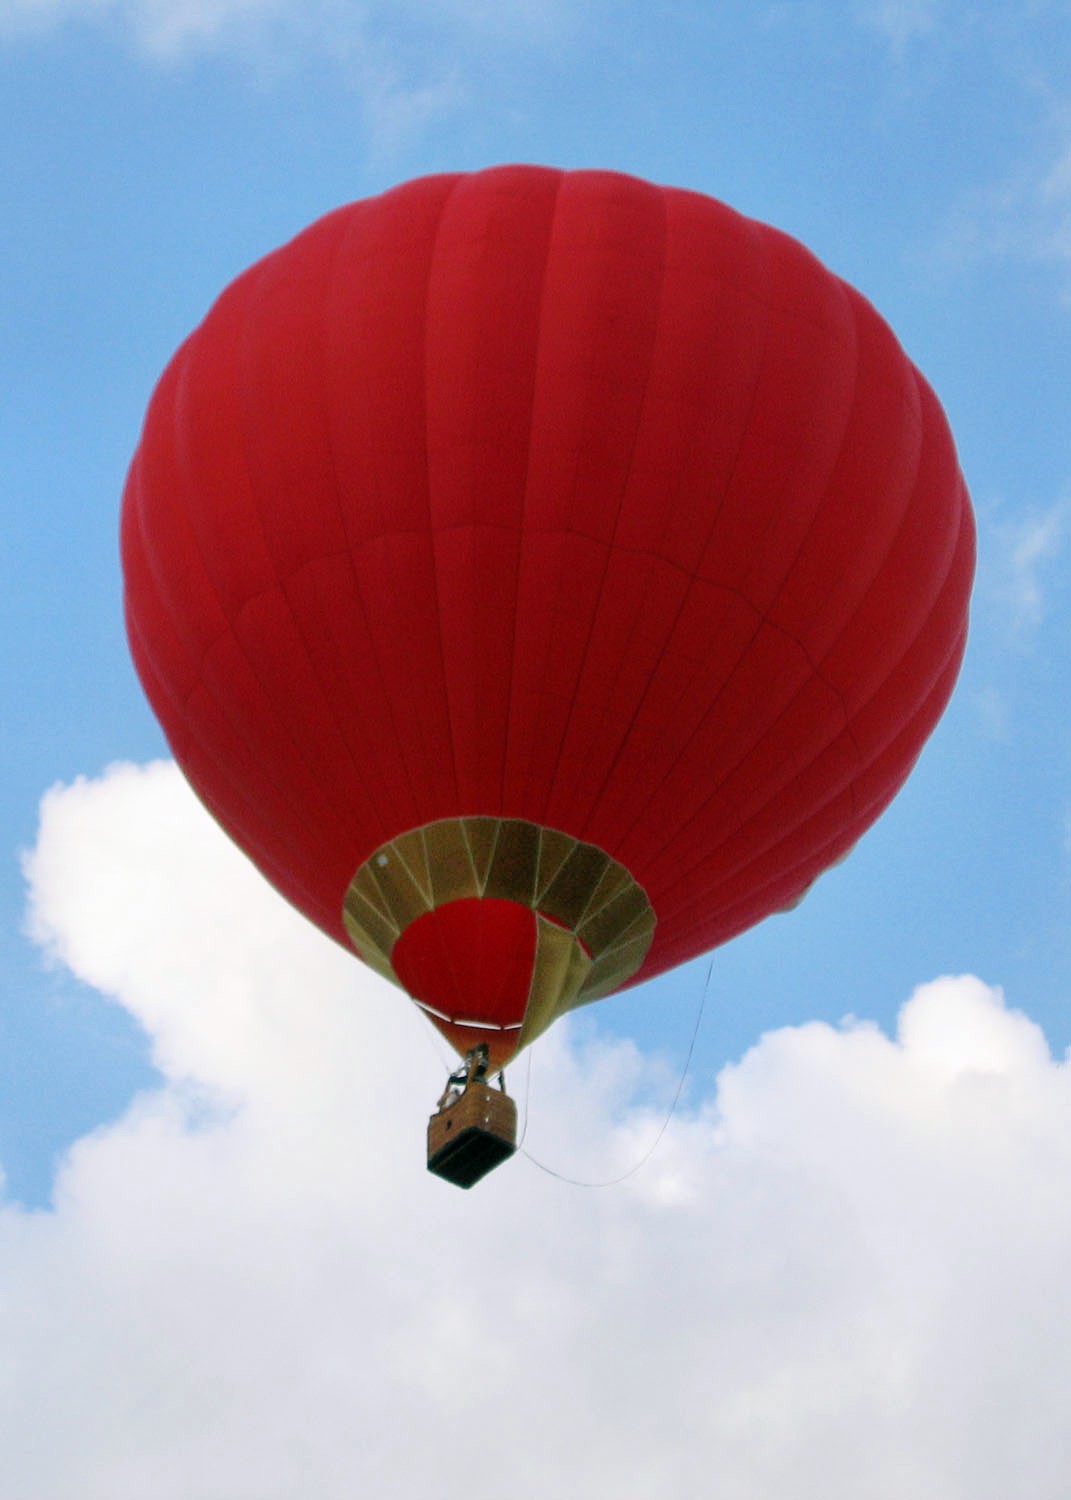 Шар с корзиной как называется. Воздушный шар. Vozdushnyye shar. Красный воздушный шар с корзиной. Воздушный шар аэростат.